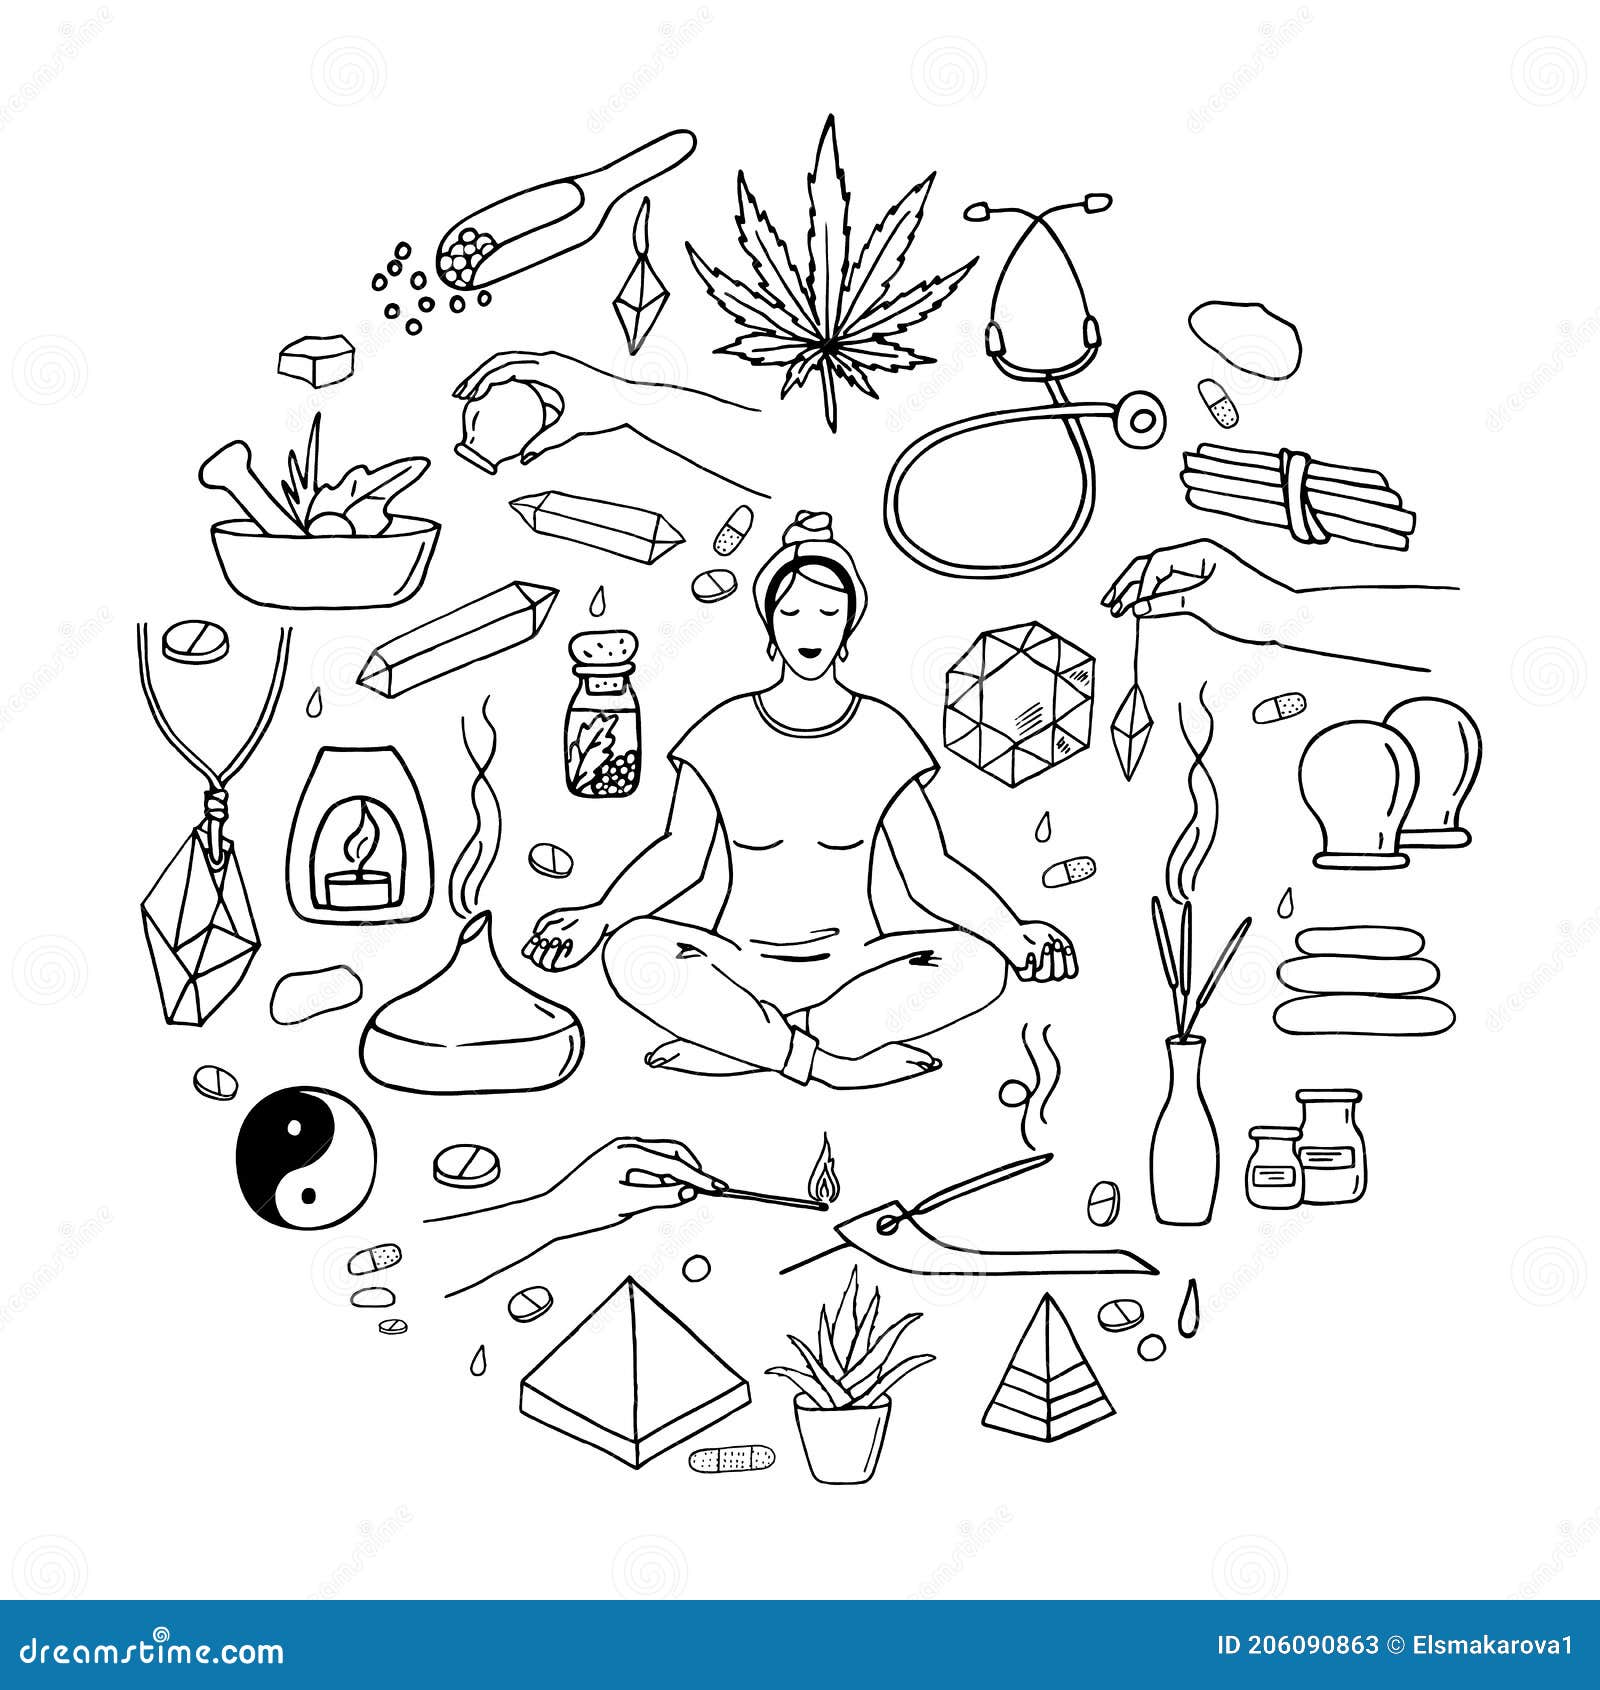 Mão Desenhada Homem Fazendo Yoga PNG Imagens Gratuitas Para Download -  Lovepik